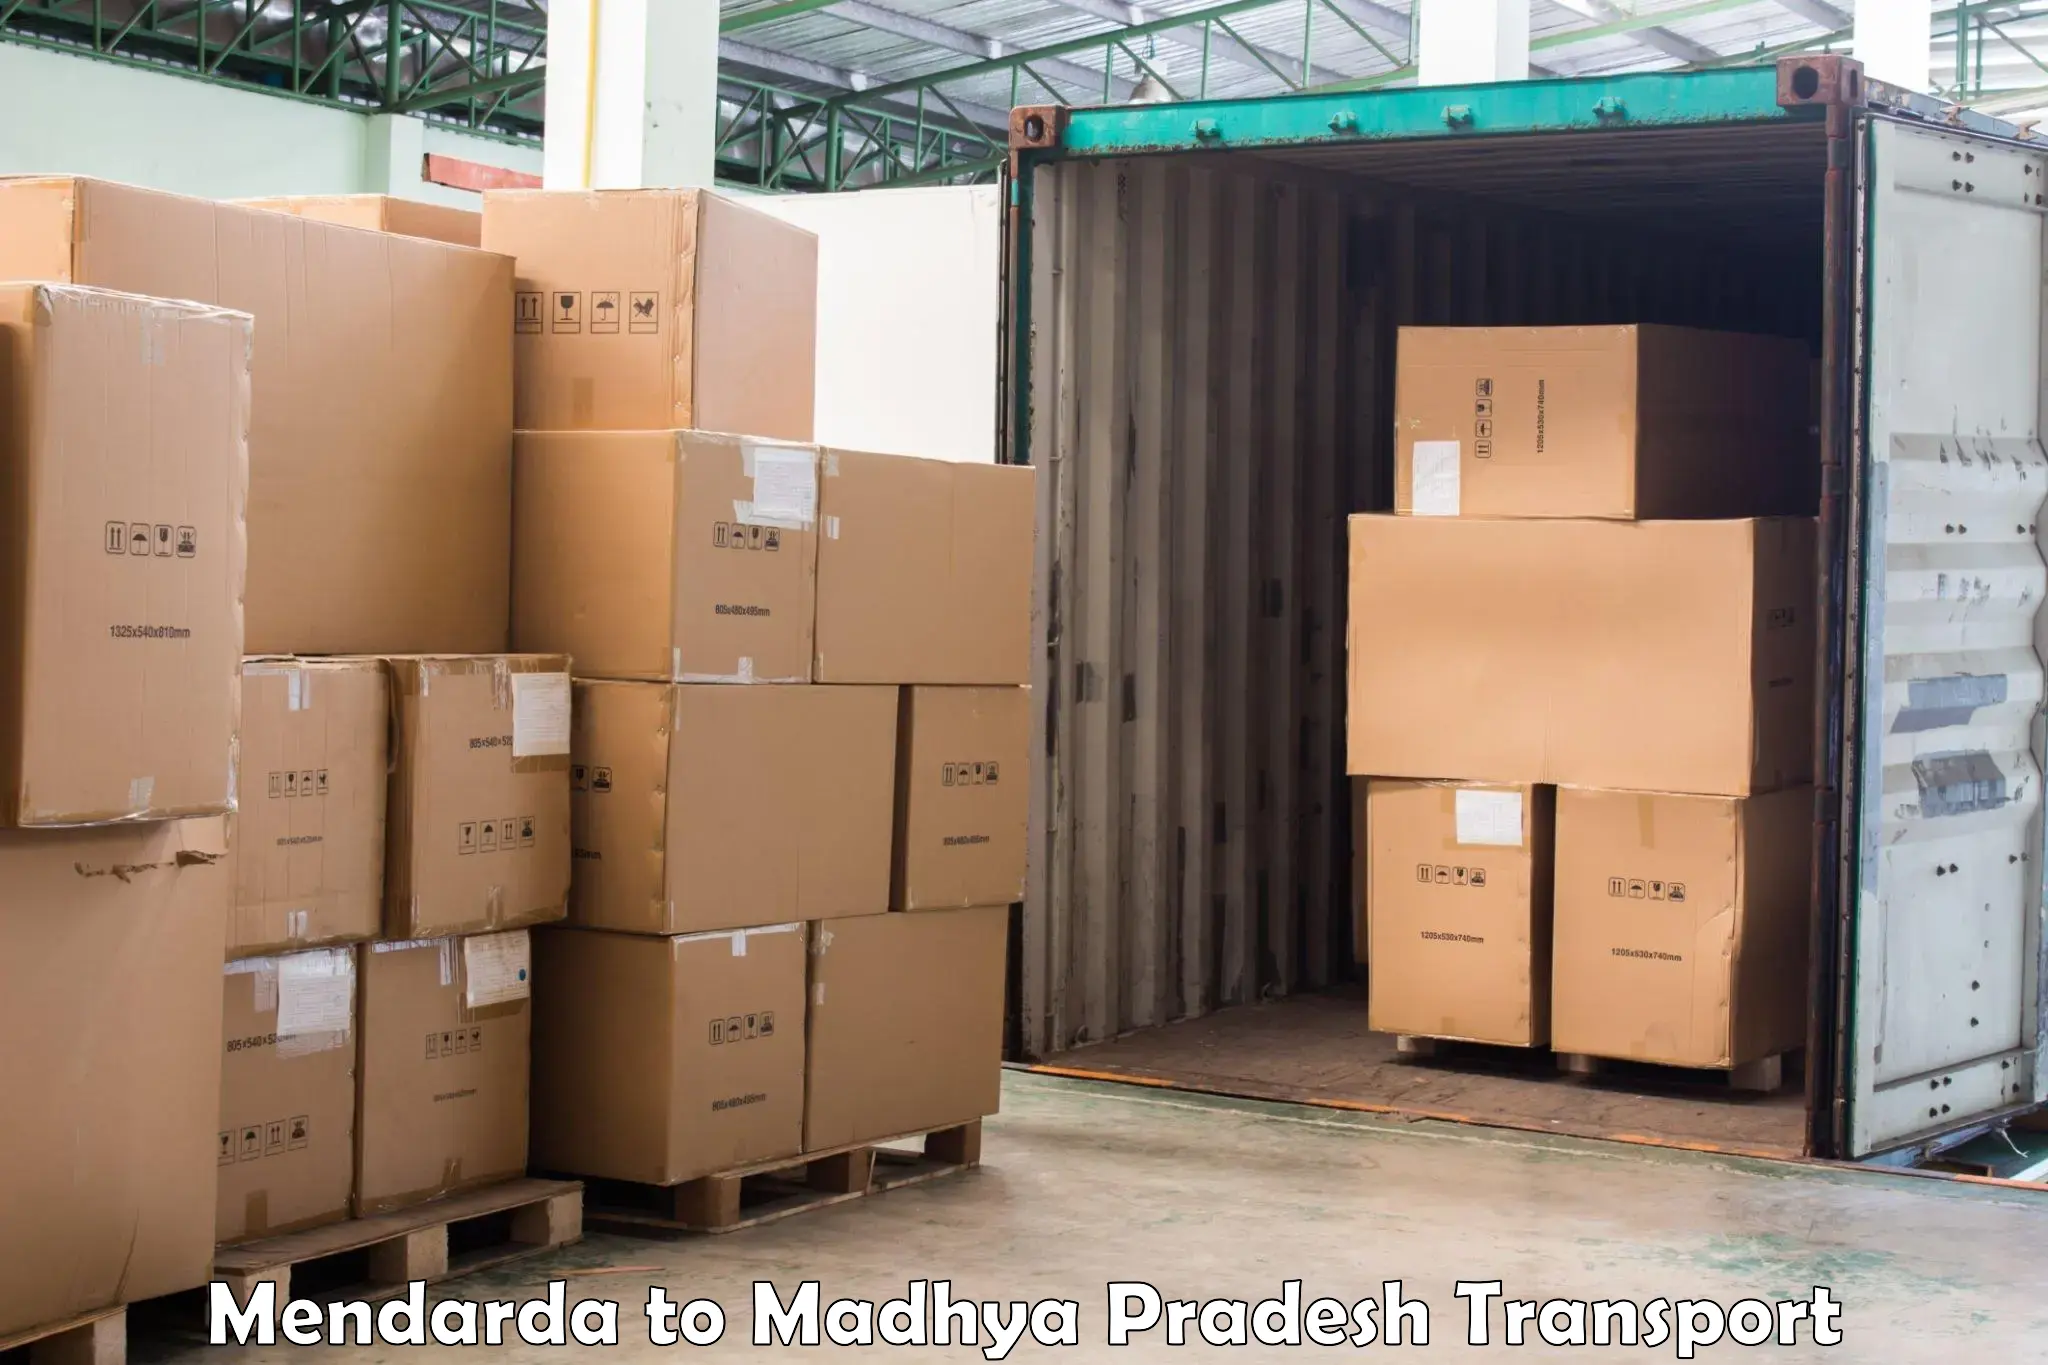 Commercial transport service Mendarda to Garoth